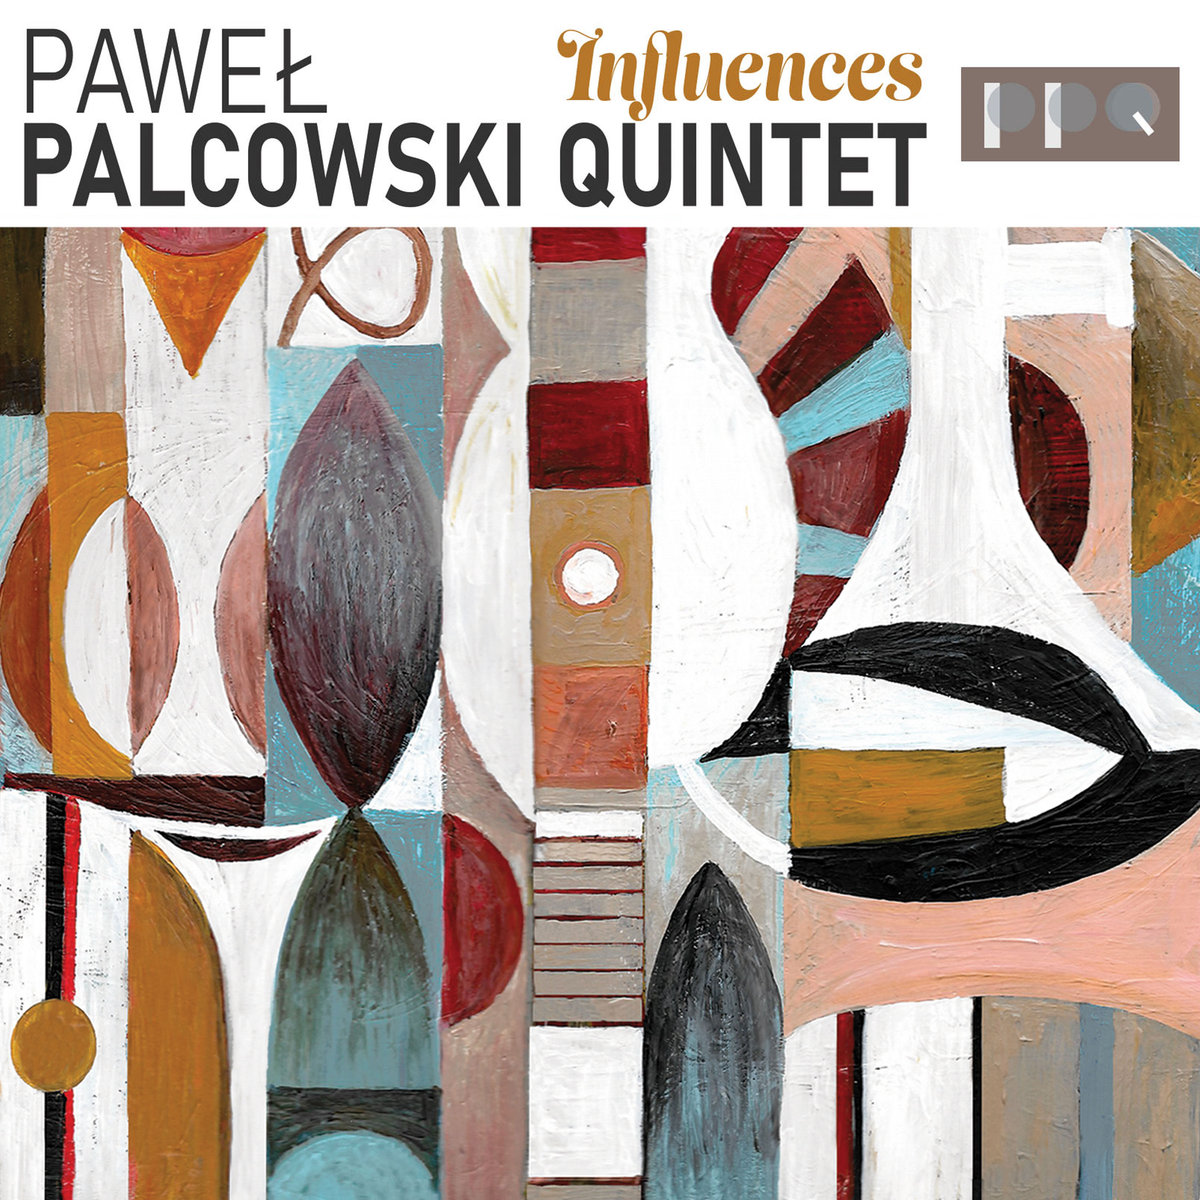 Influences by Paweł Palcowski